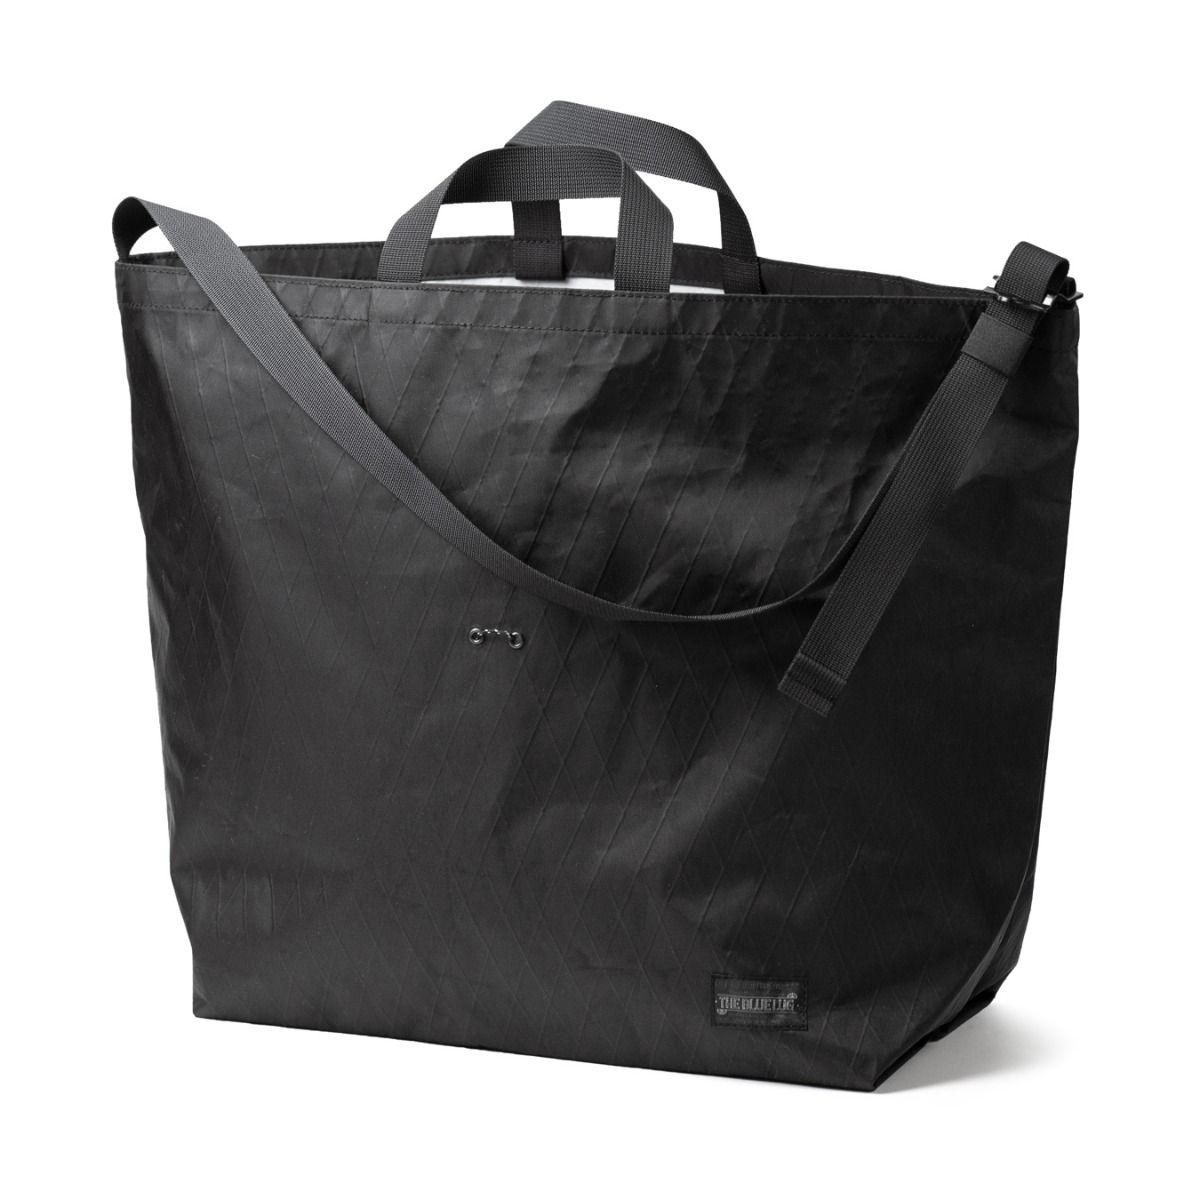 Bluelug - 137 Tote bag x-pac (black)